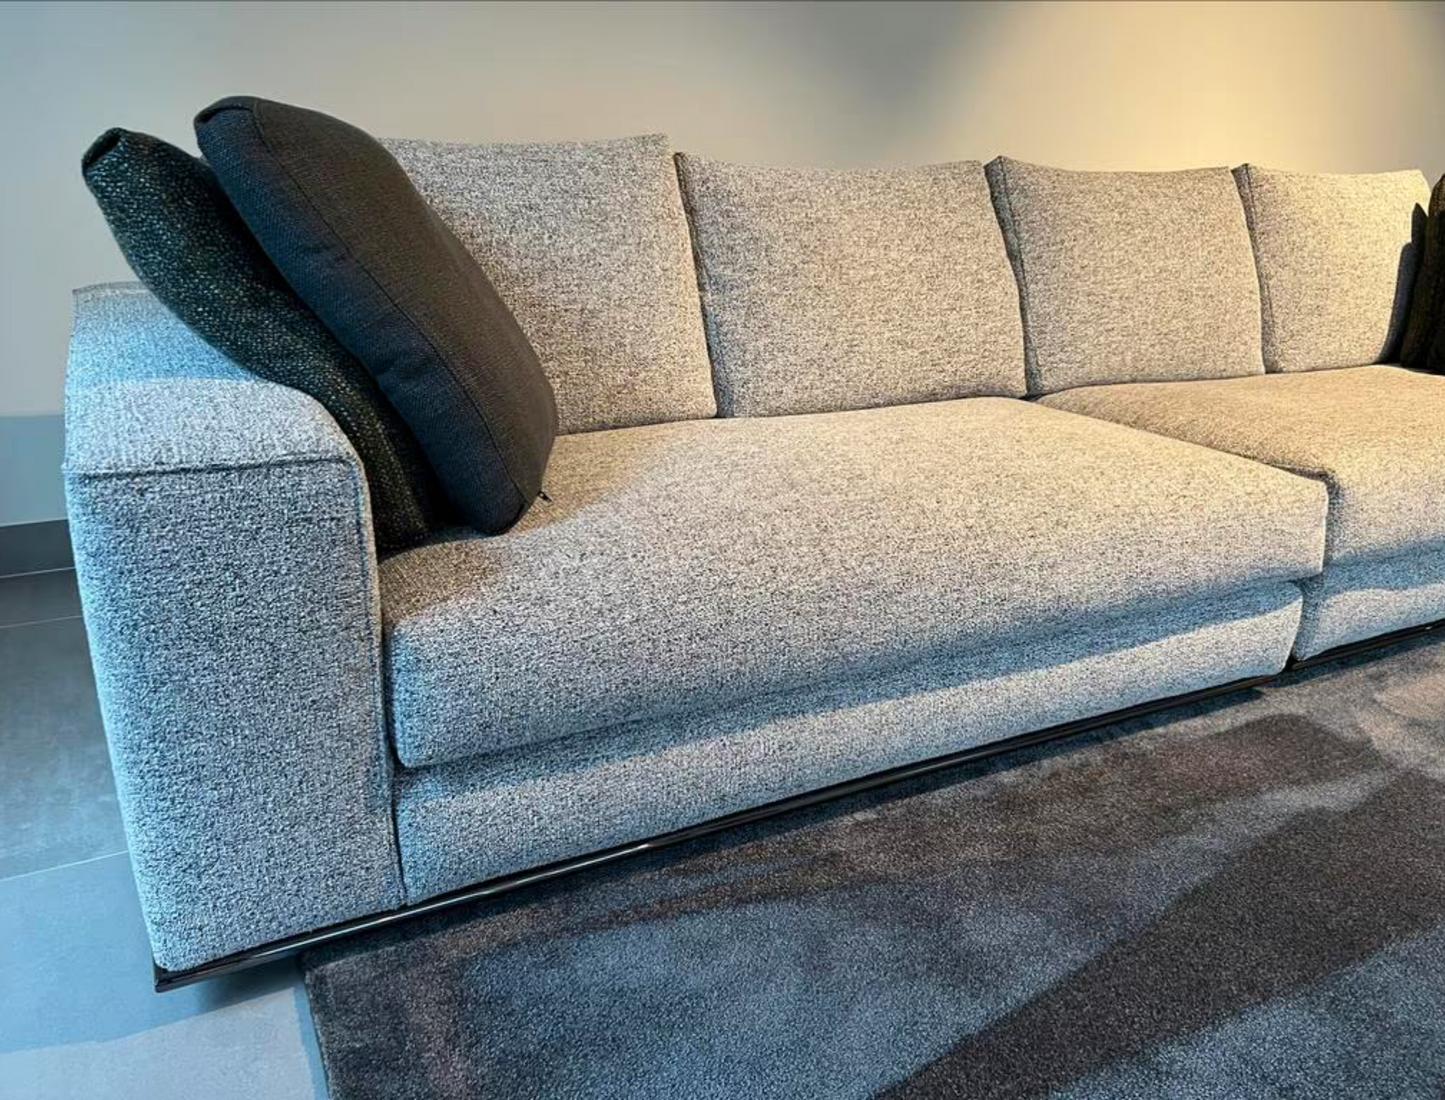 Minotti Hamilton Modular corner sofa consisting of 4 elements